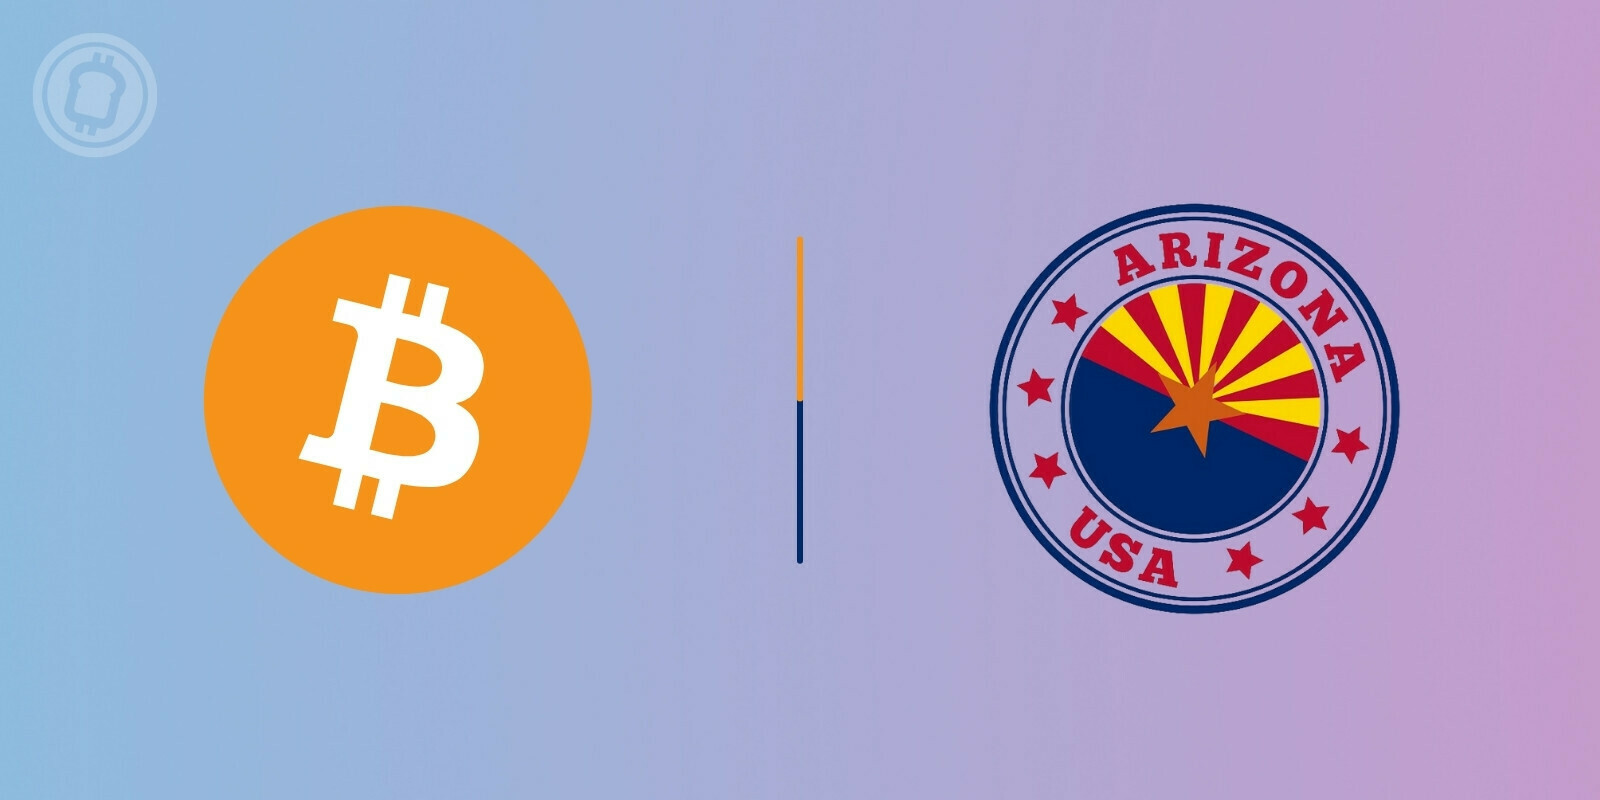 Une politicienne américaine souhaite que le Bitcoin (BTC) devienne monnaie légale en Arizona